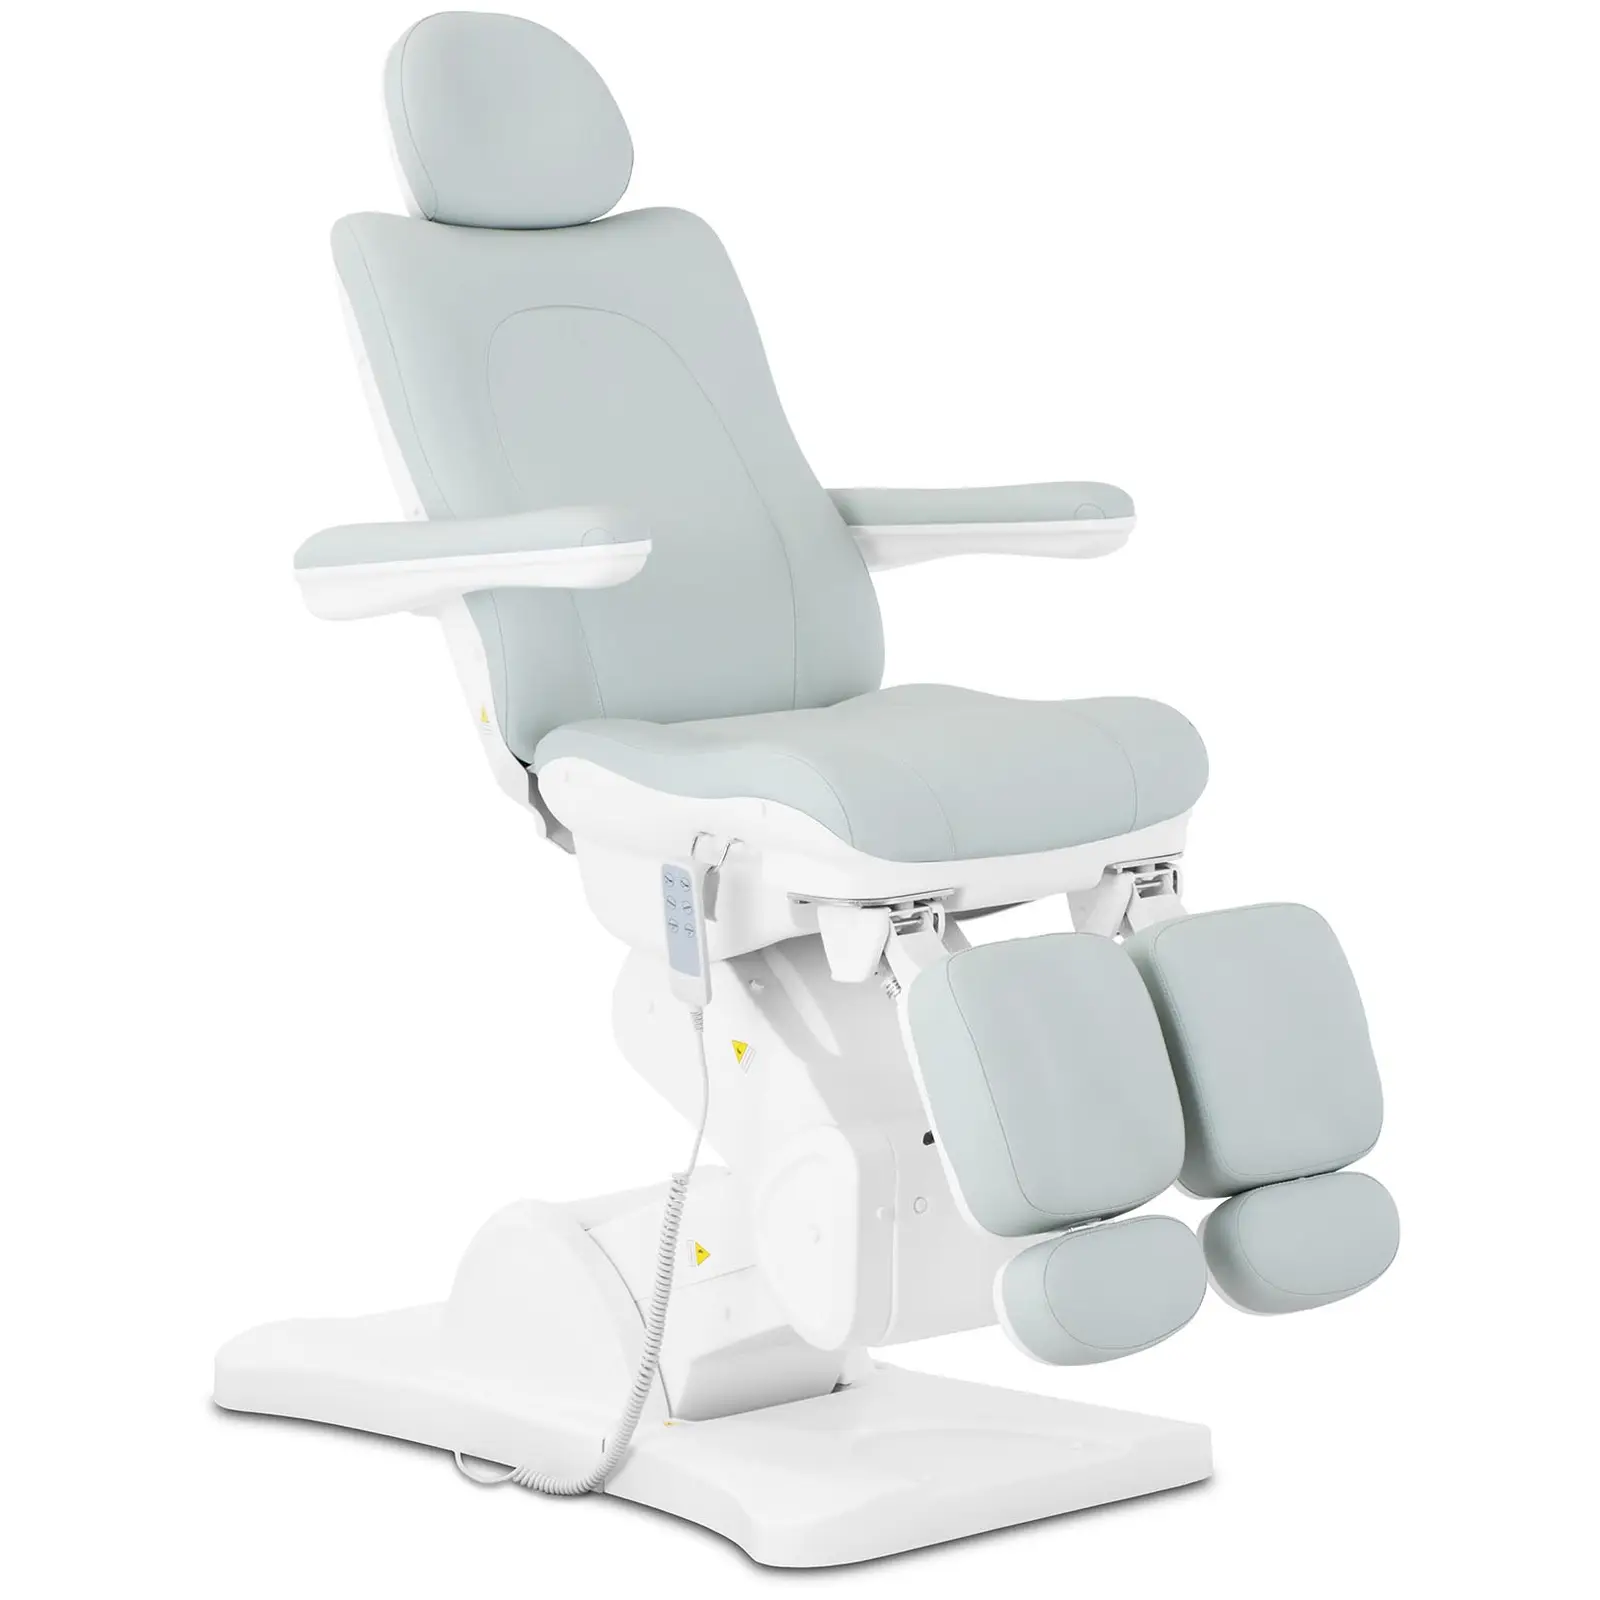 Cadeira de estética - 300 W - 150 kg - Verde claro, Branco